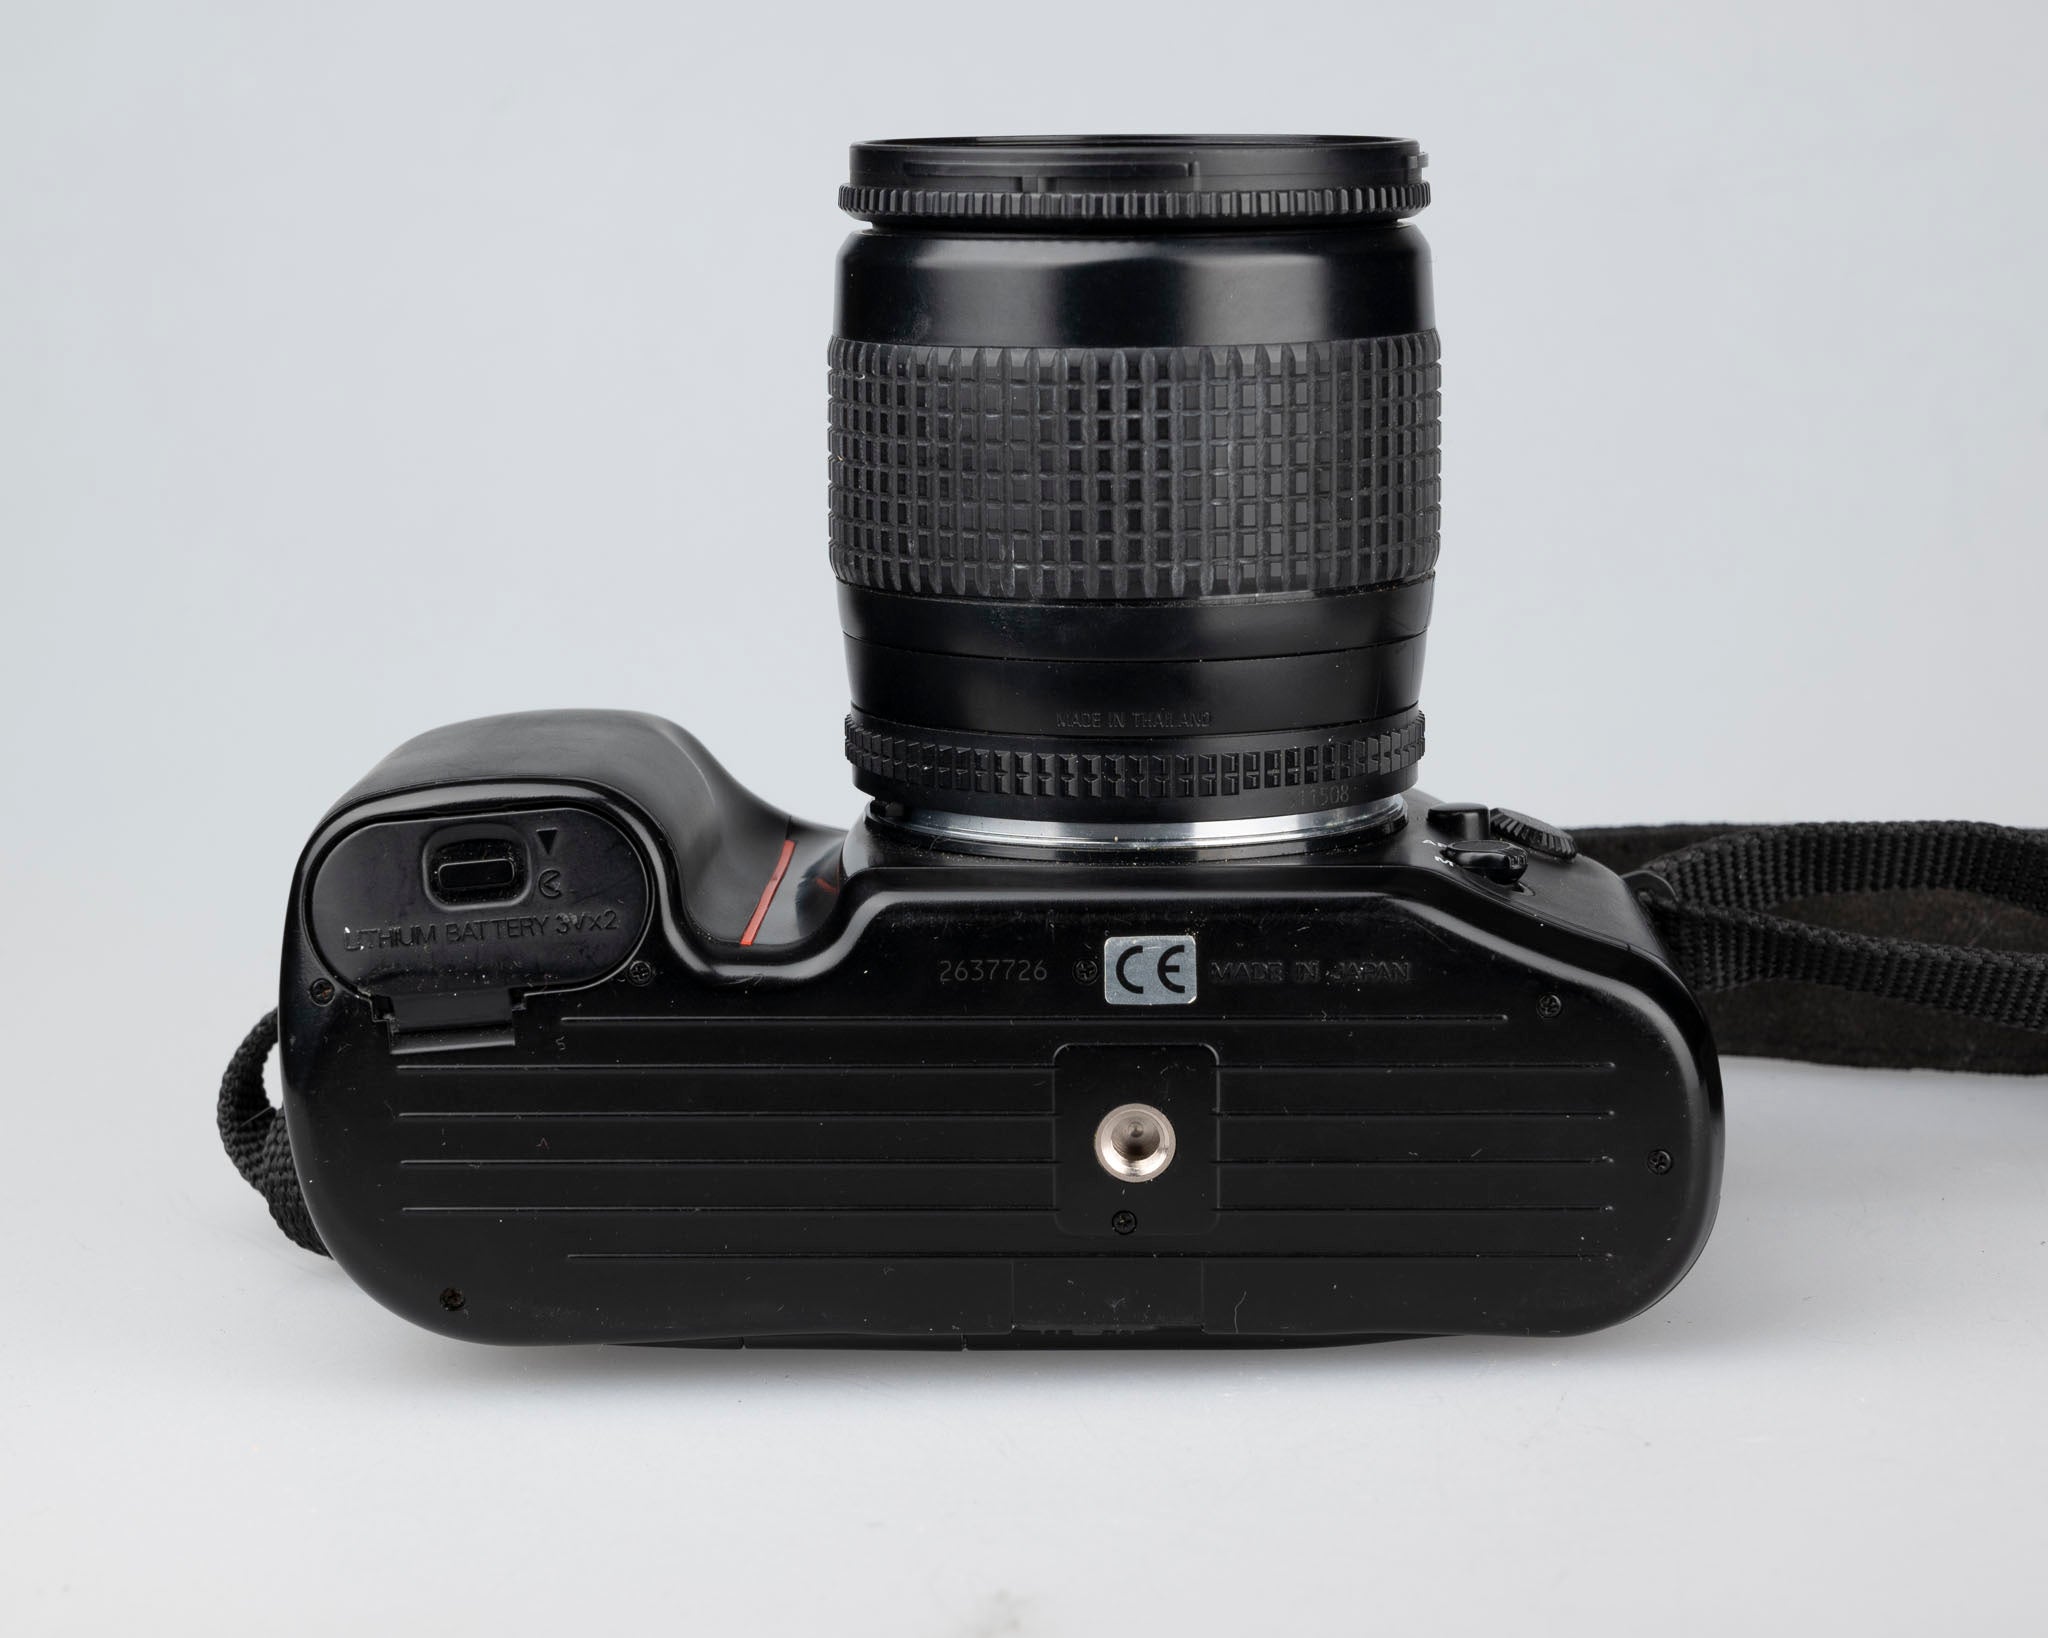 Nikon F70 35mm film SLR w/ AF Nikkor 28-80mm 3.5-5.6D lens – New Wave Pool